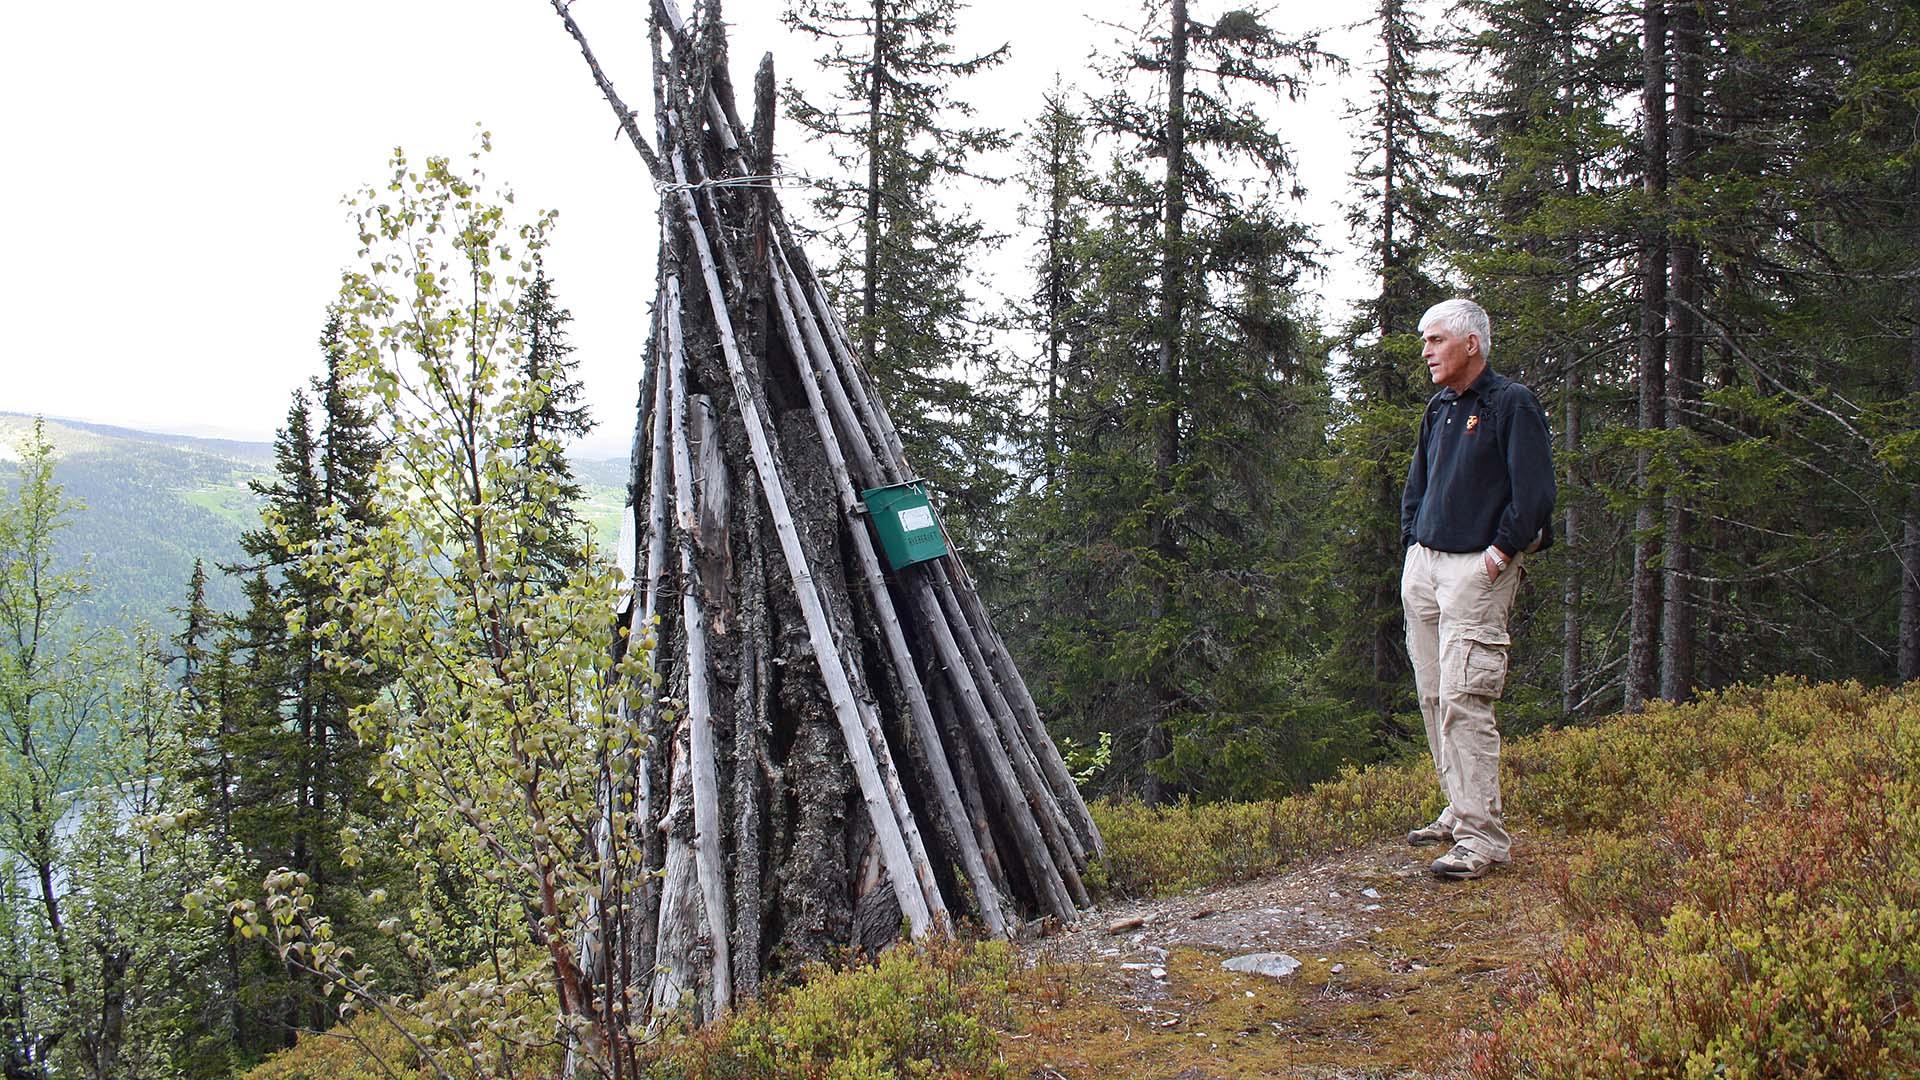 Ein Mann steht bei einer hölzernen Signalfeuerwarte, die auf einem Vorsprung in einem bewaldeten Hang gebaut ist.